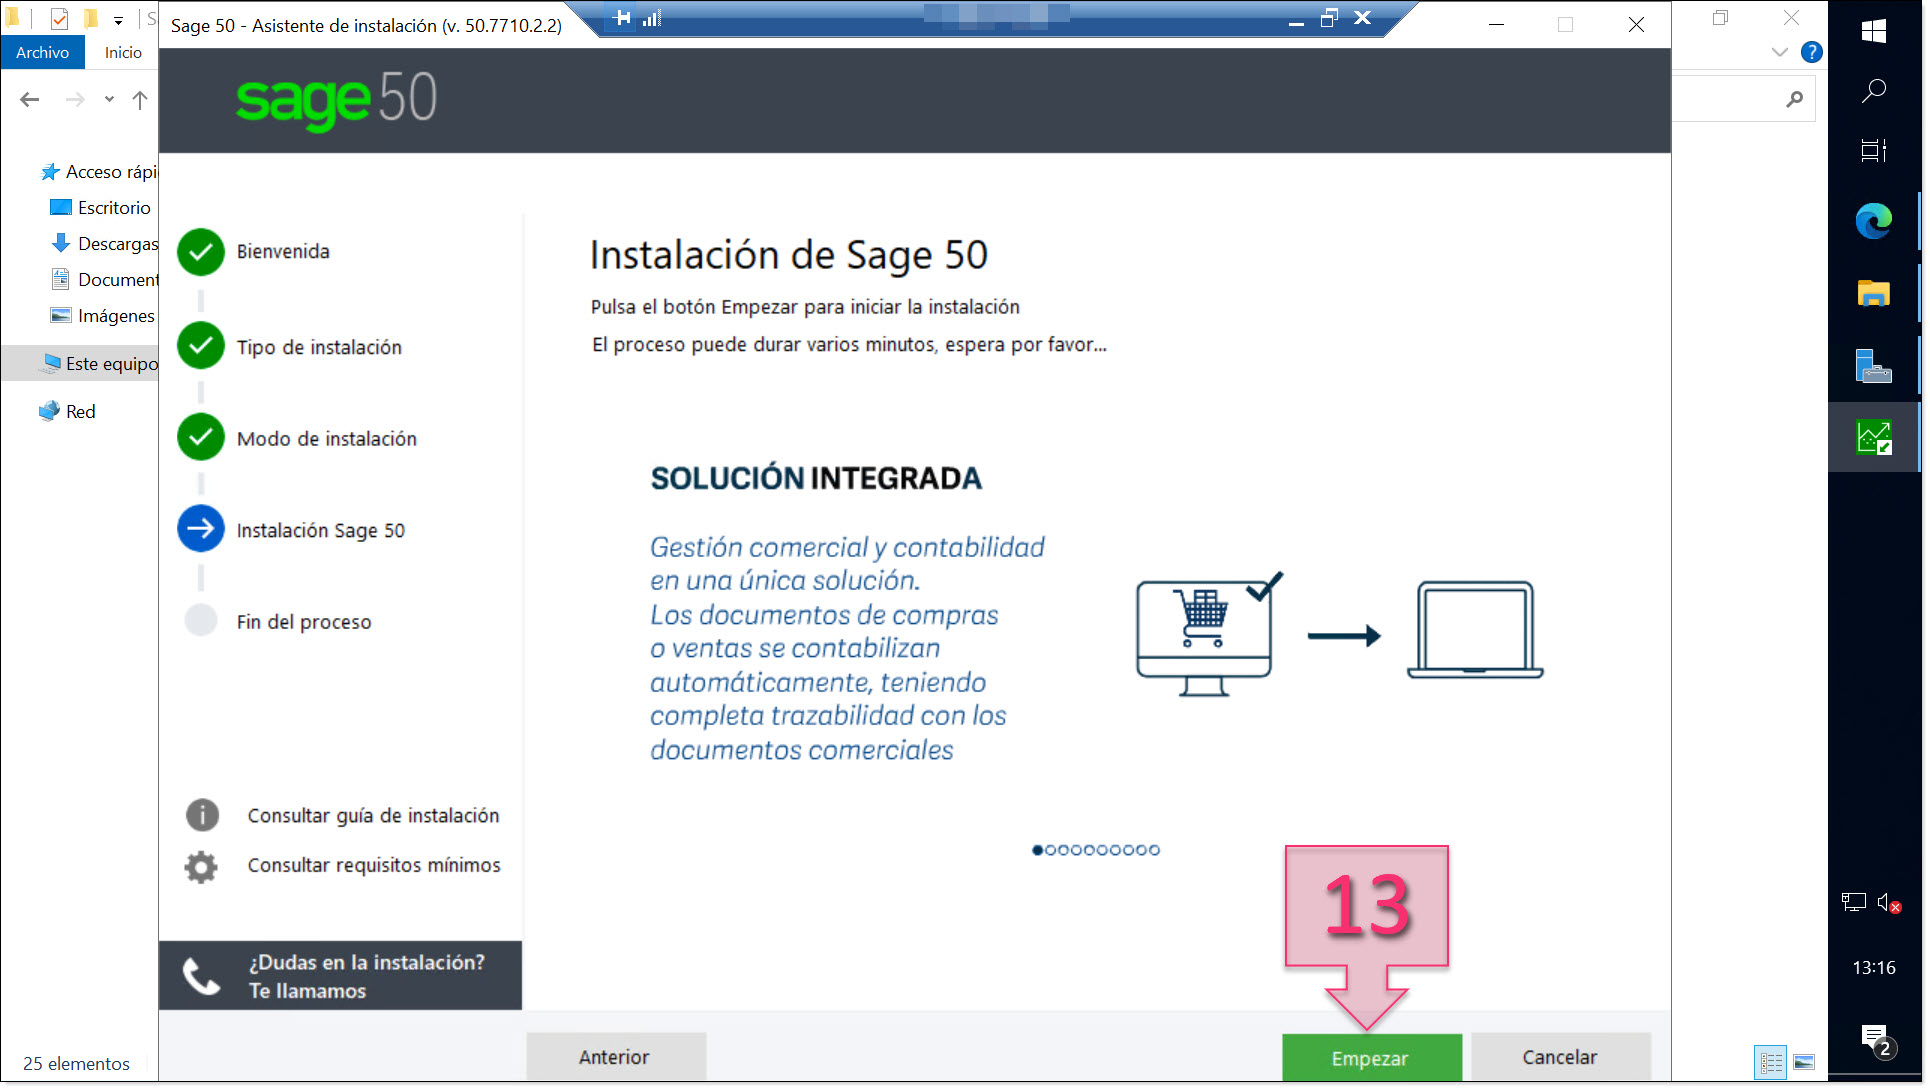 Part 1 - Start installing Sage 50 on your server